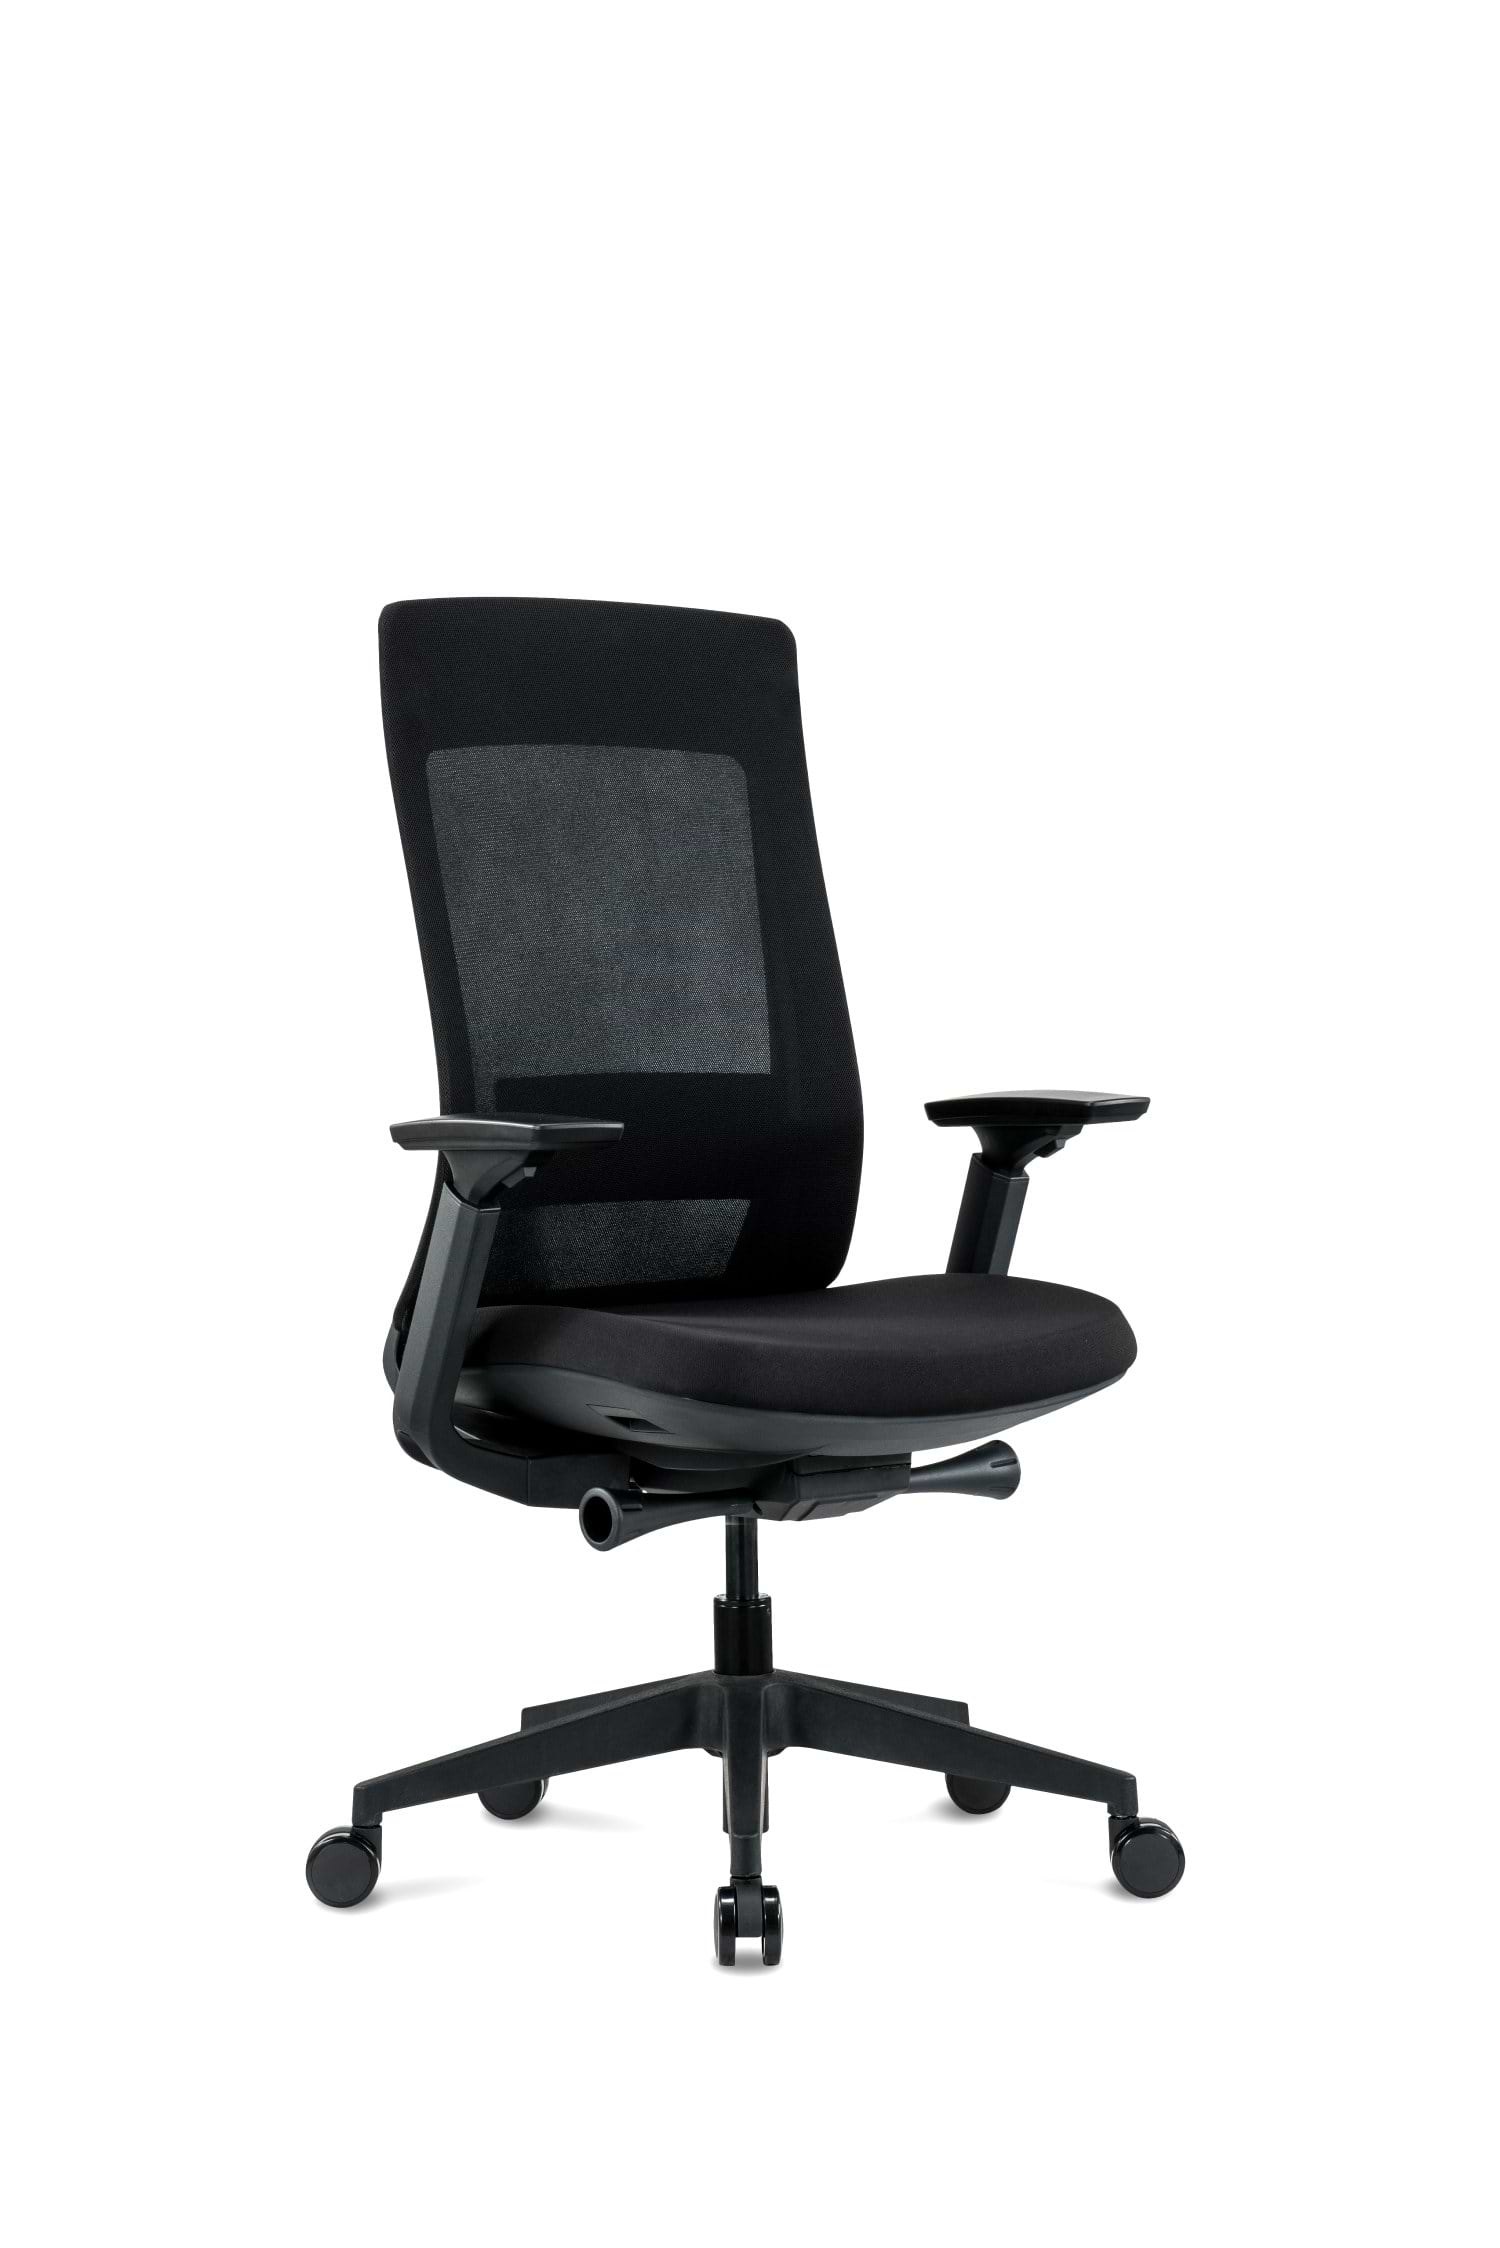 כיסא ארגונומי רב תכליתי לישיבה ממושכת דגם אלביט צבע שחור SitPlus